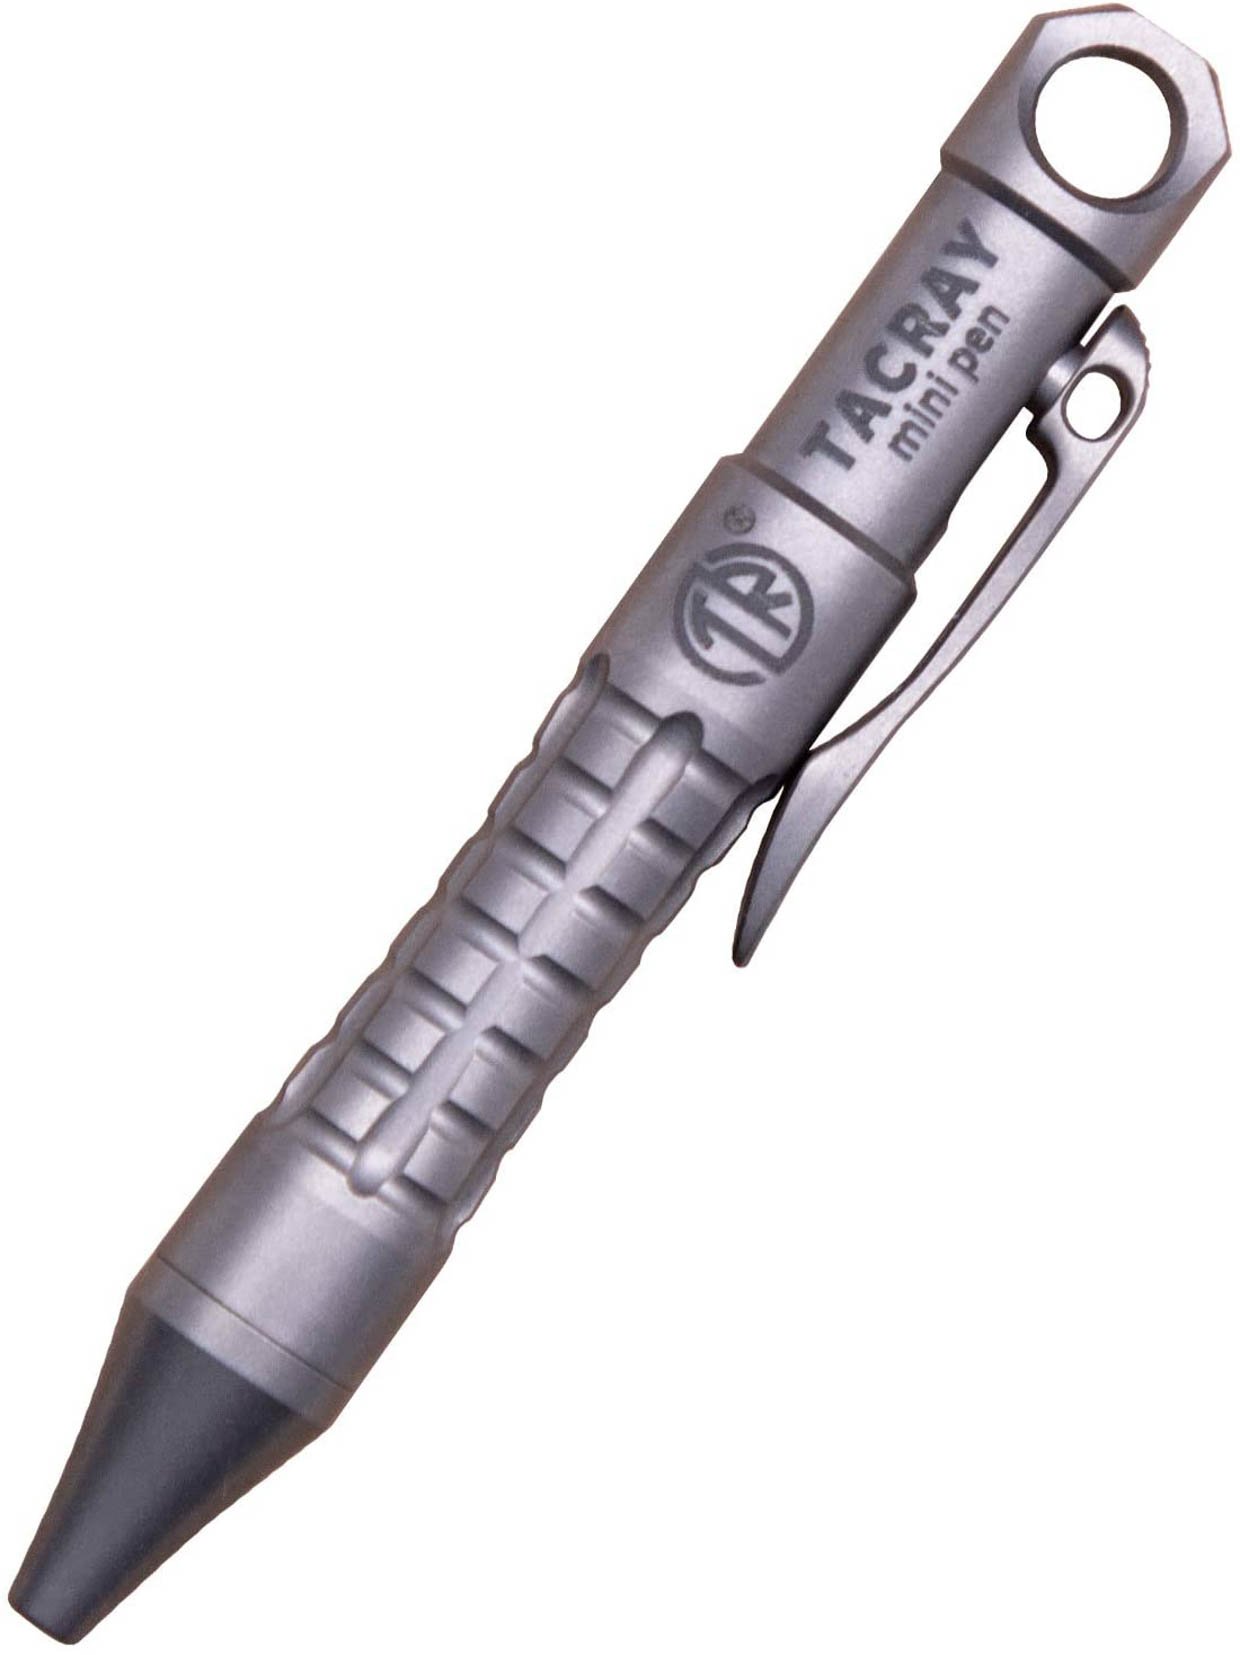 TACRAY Tiny Titanium Pen